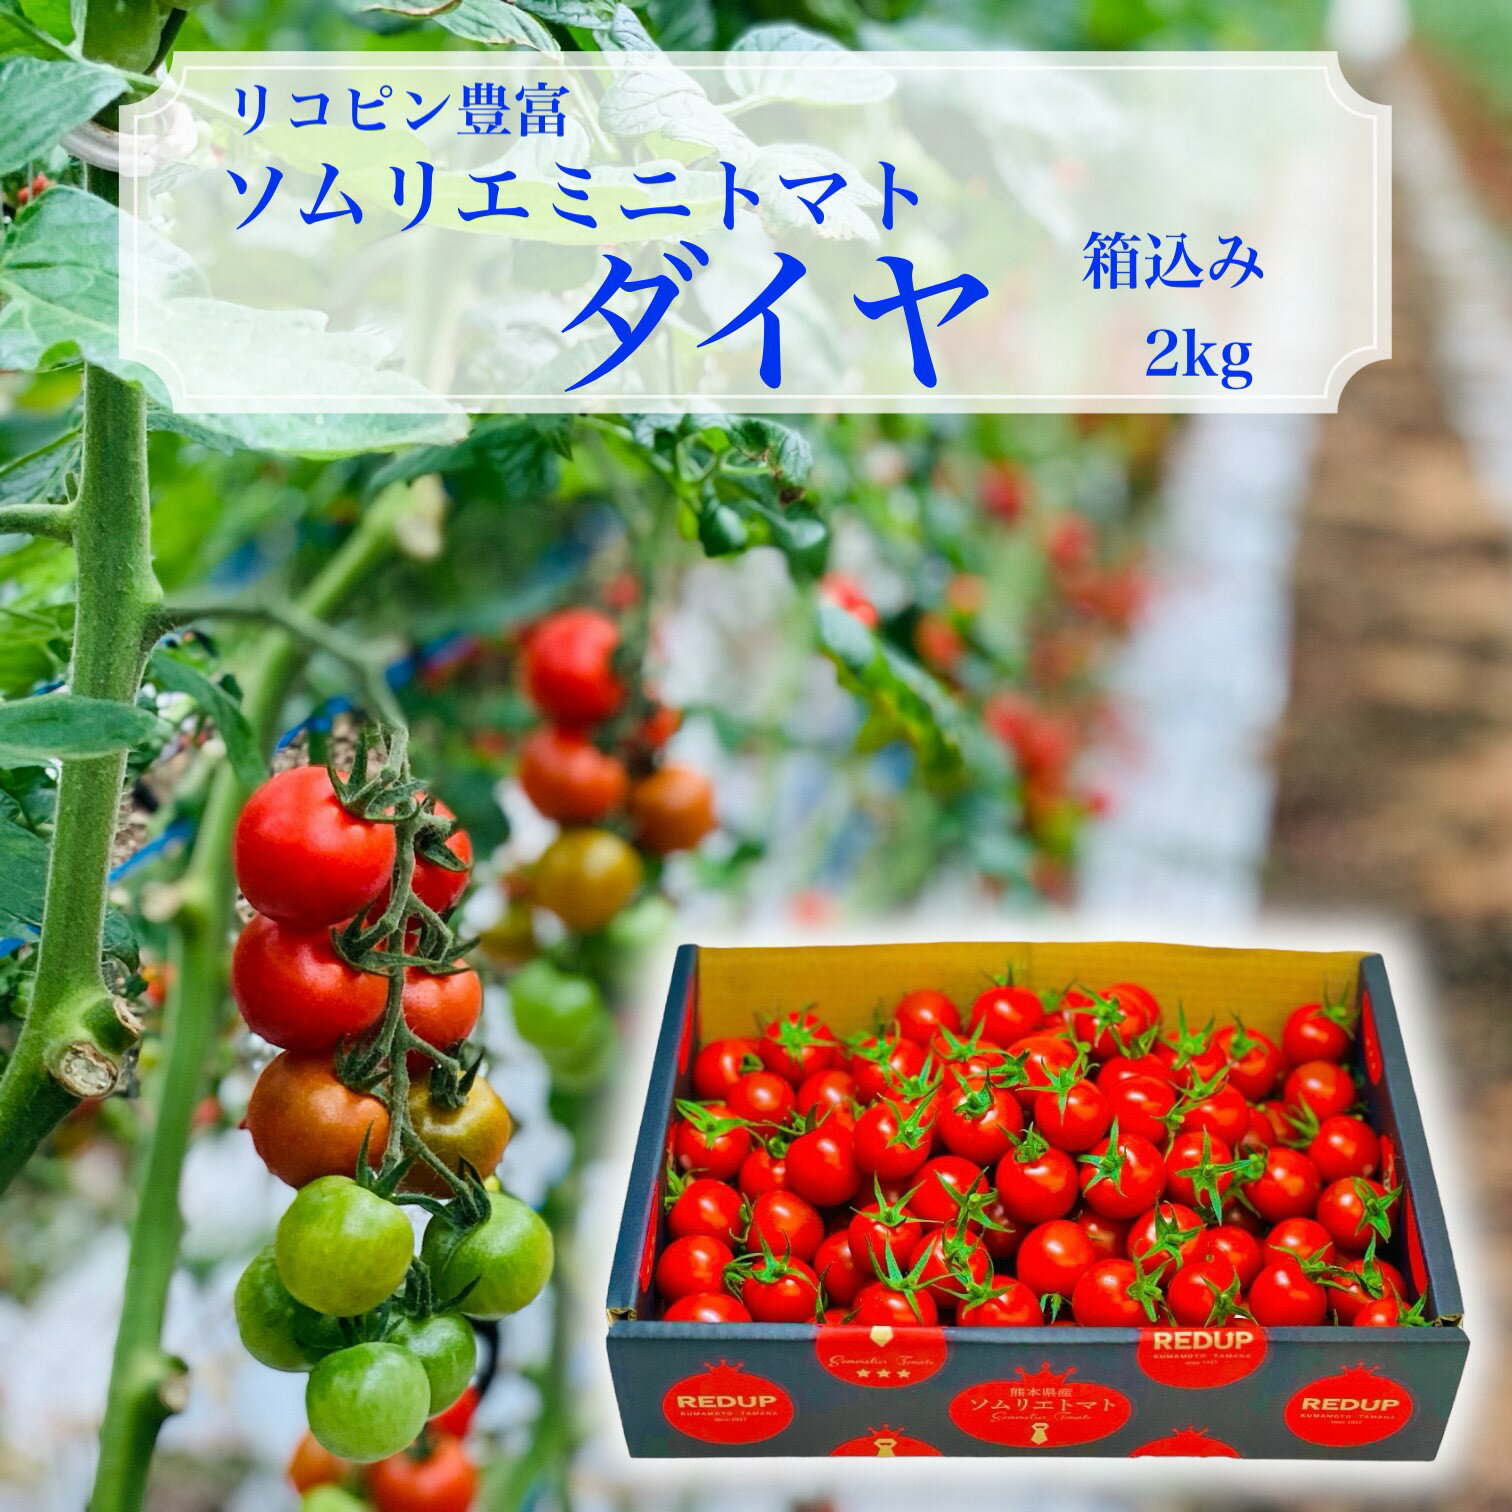 【 楽天ランキング 1位獲得】 とまと ミニトマト 送料無料 【 塩トマト のような フルーツ トマ ...